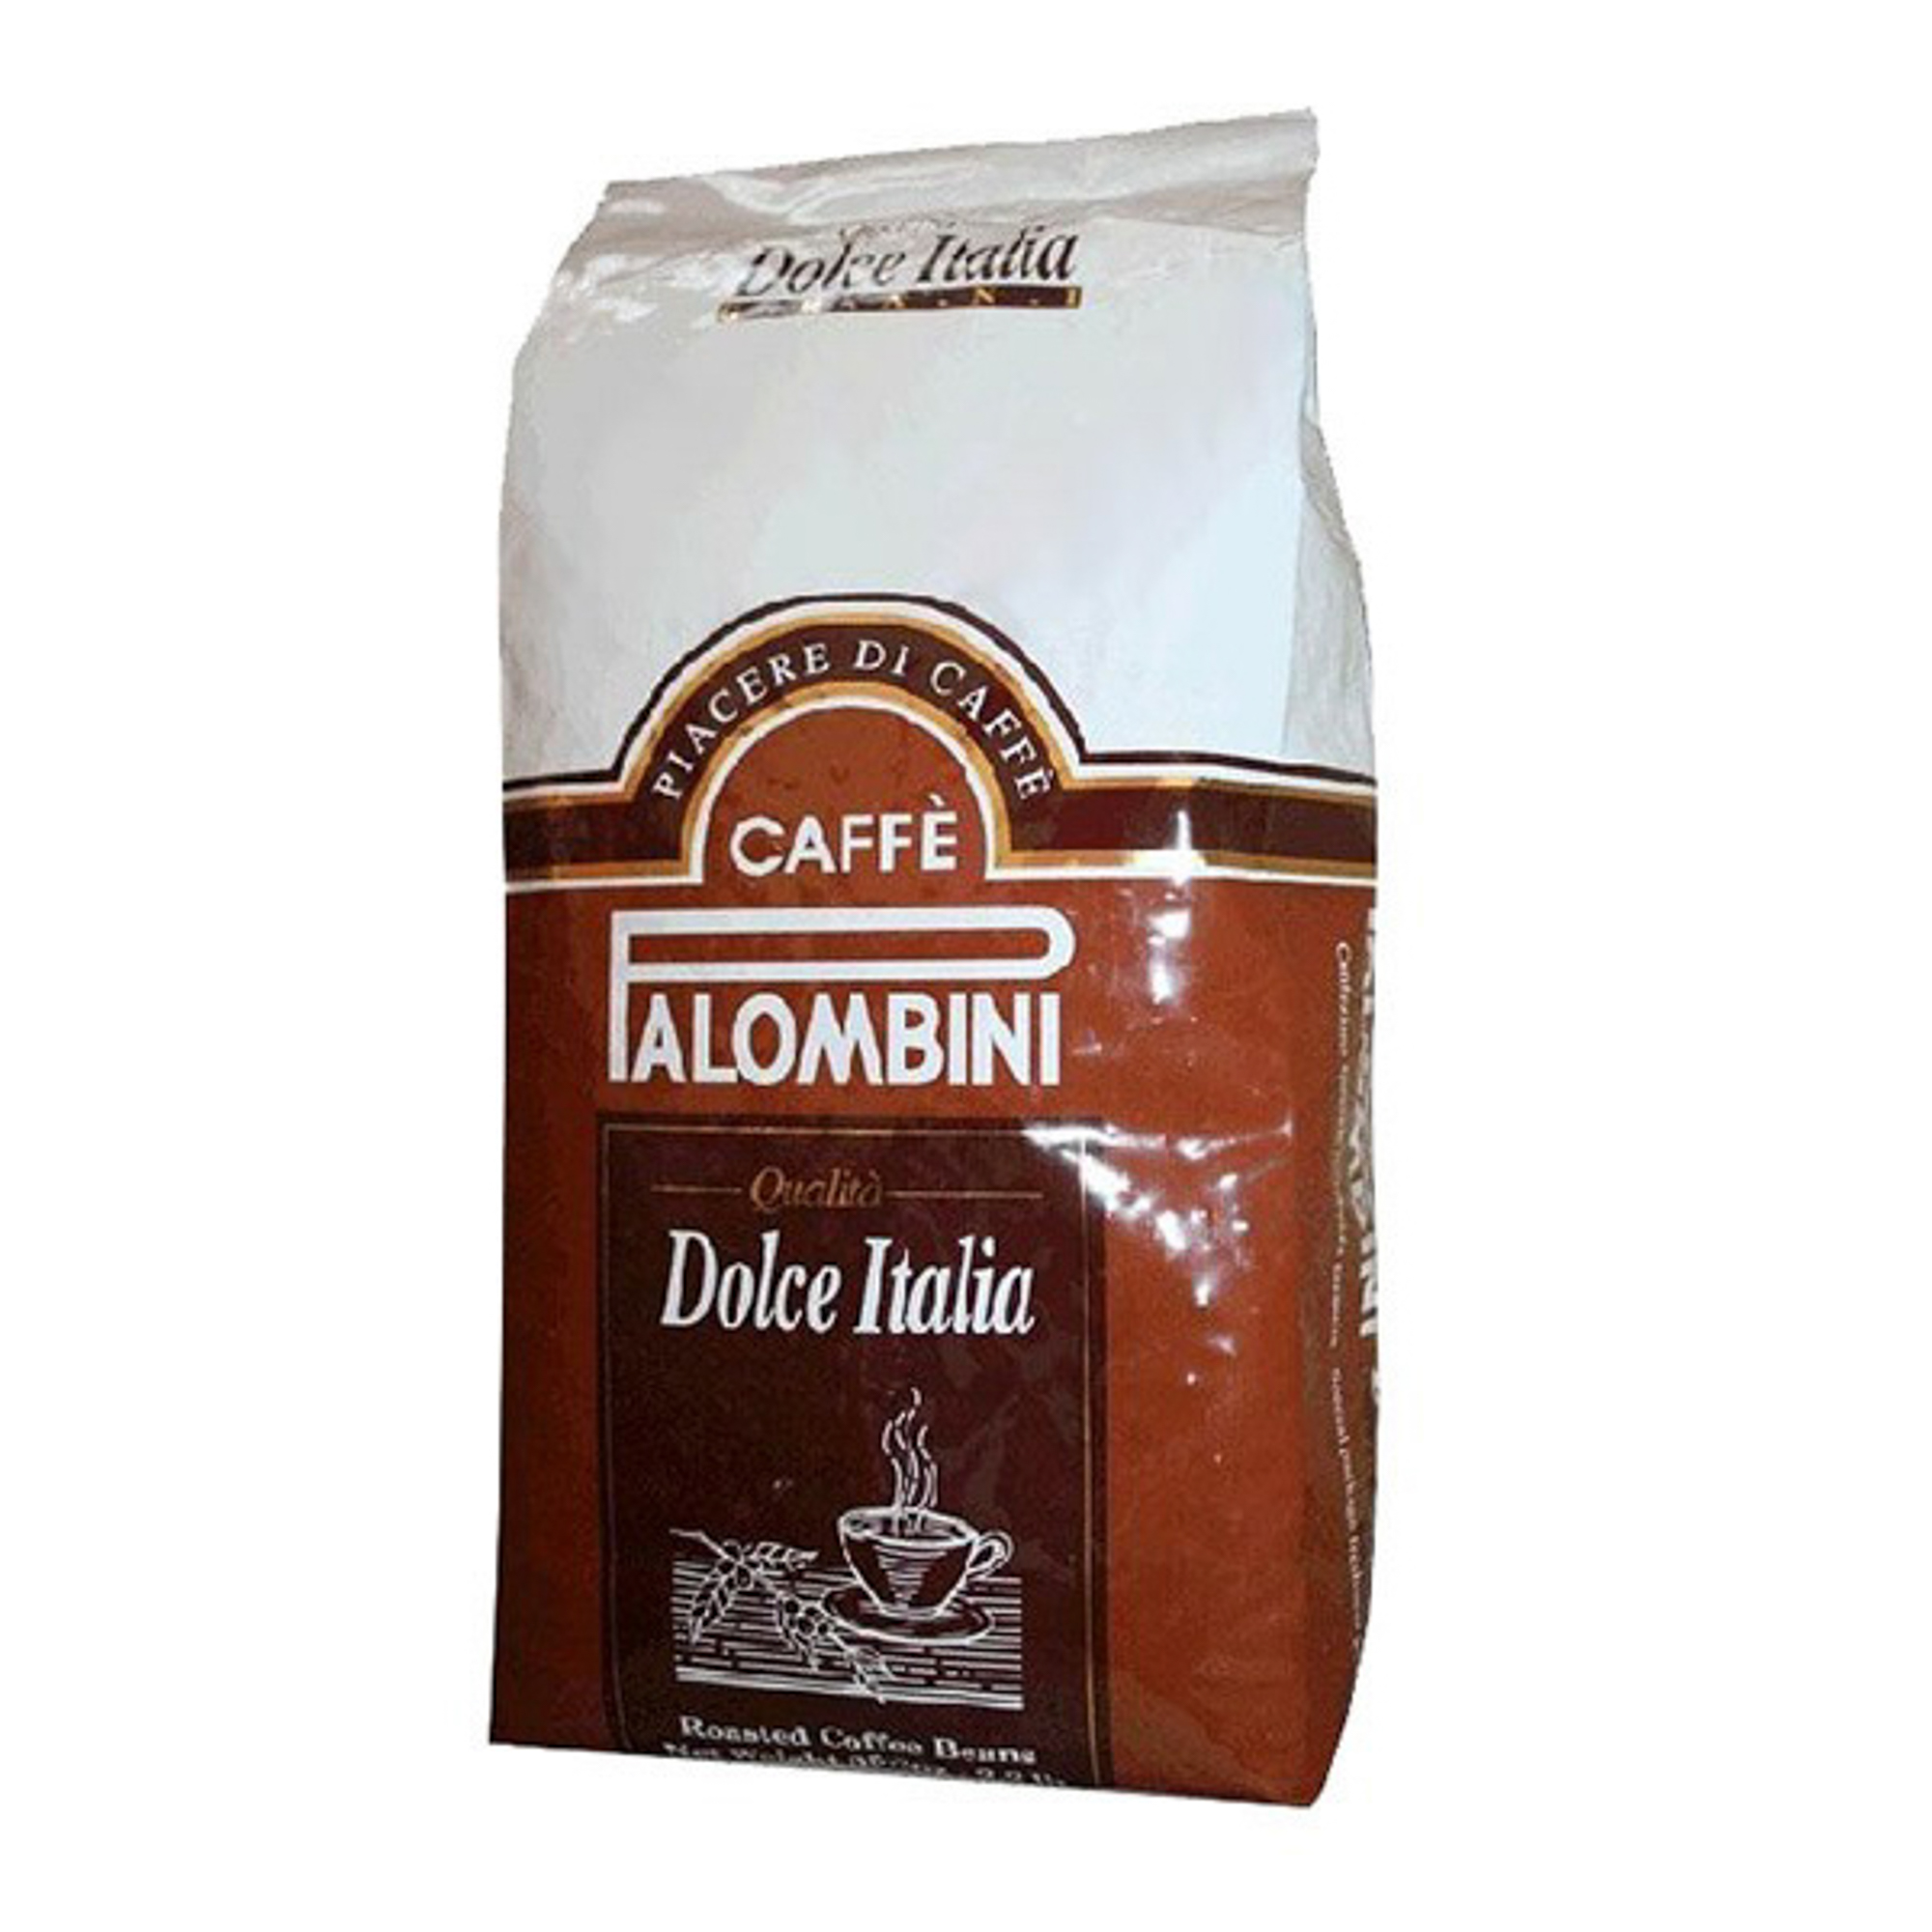 Кофе в зернах Palombini Dolce Italia 1 кг кофе meollo ирландский крем 100% арабика в у 1 кг